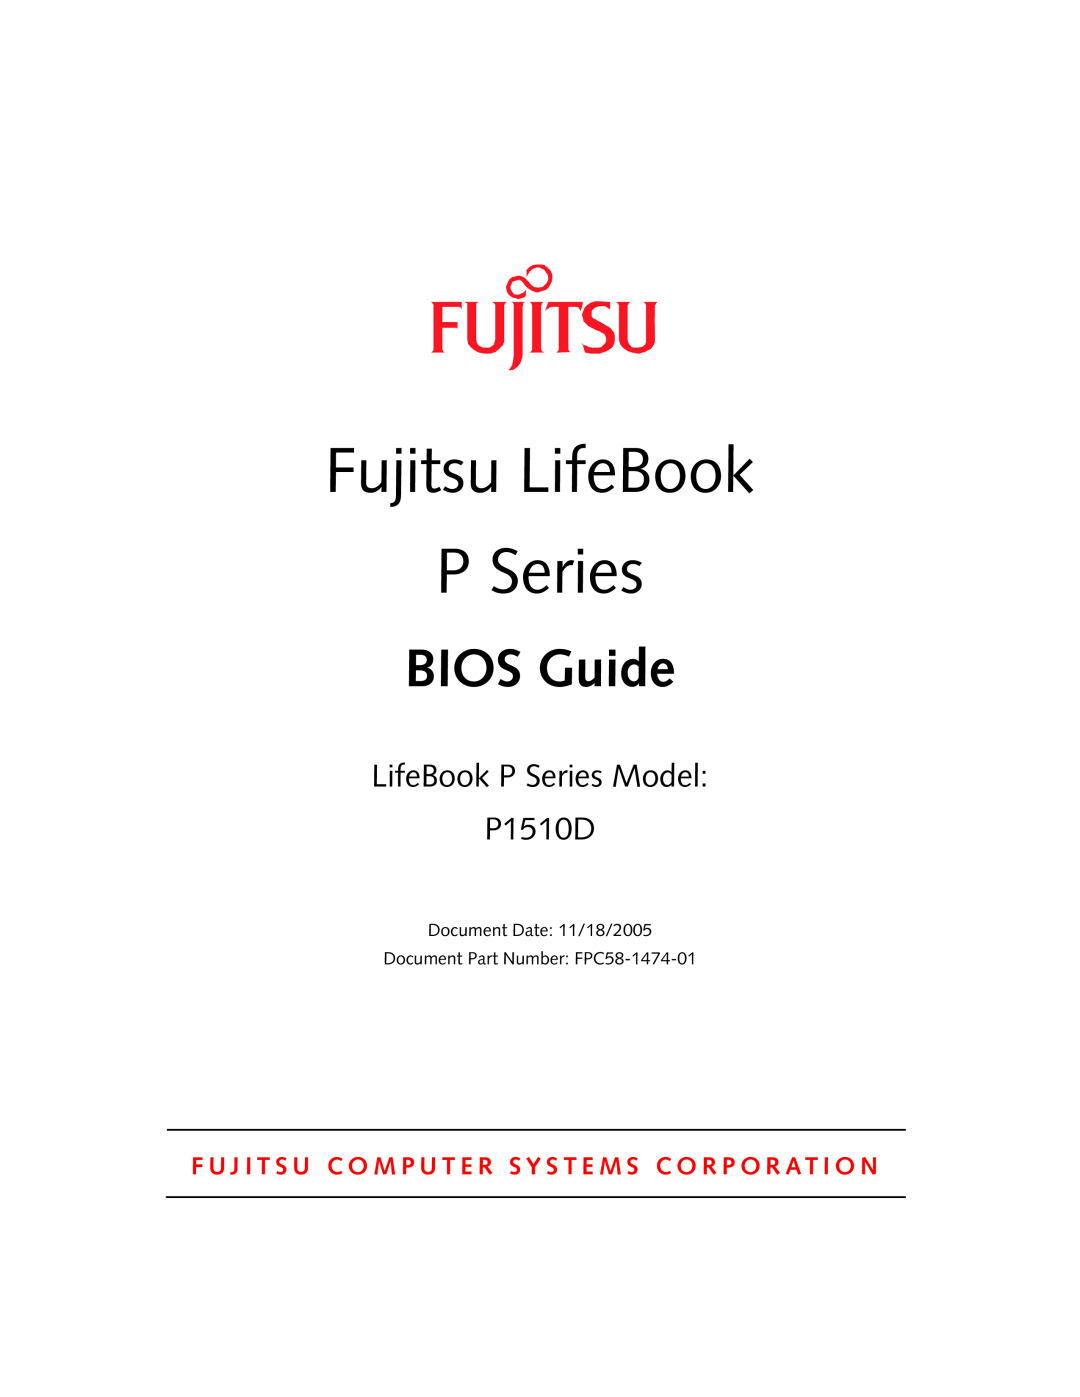 Fujitsu manual Fujitsu LifeBook, BIOS Guide, LifeBook P Series Model P1510D 